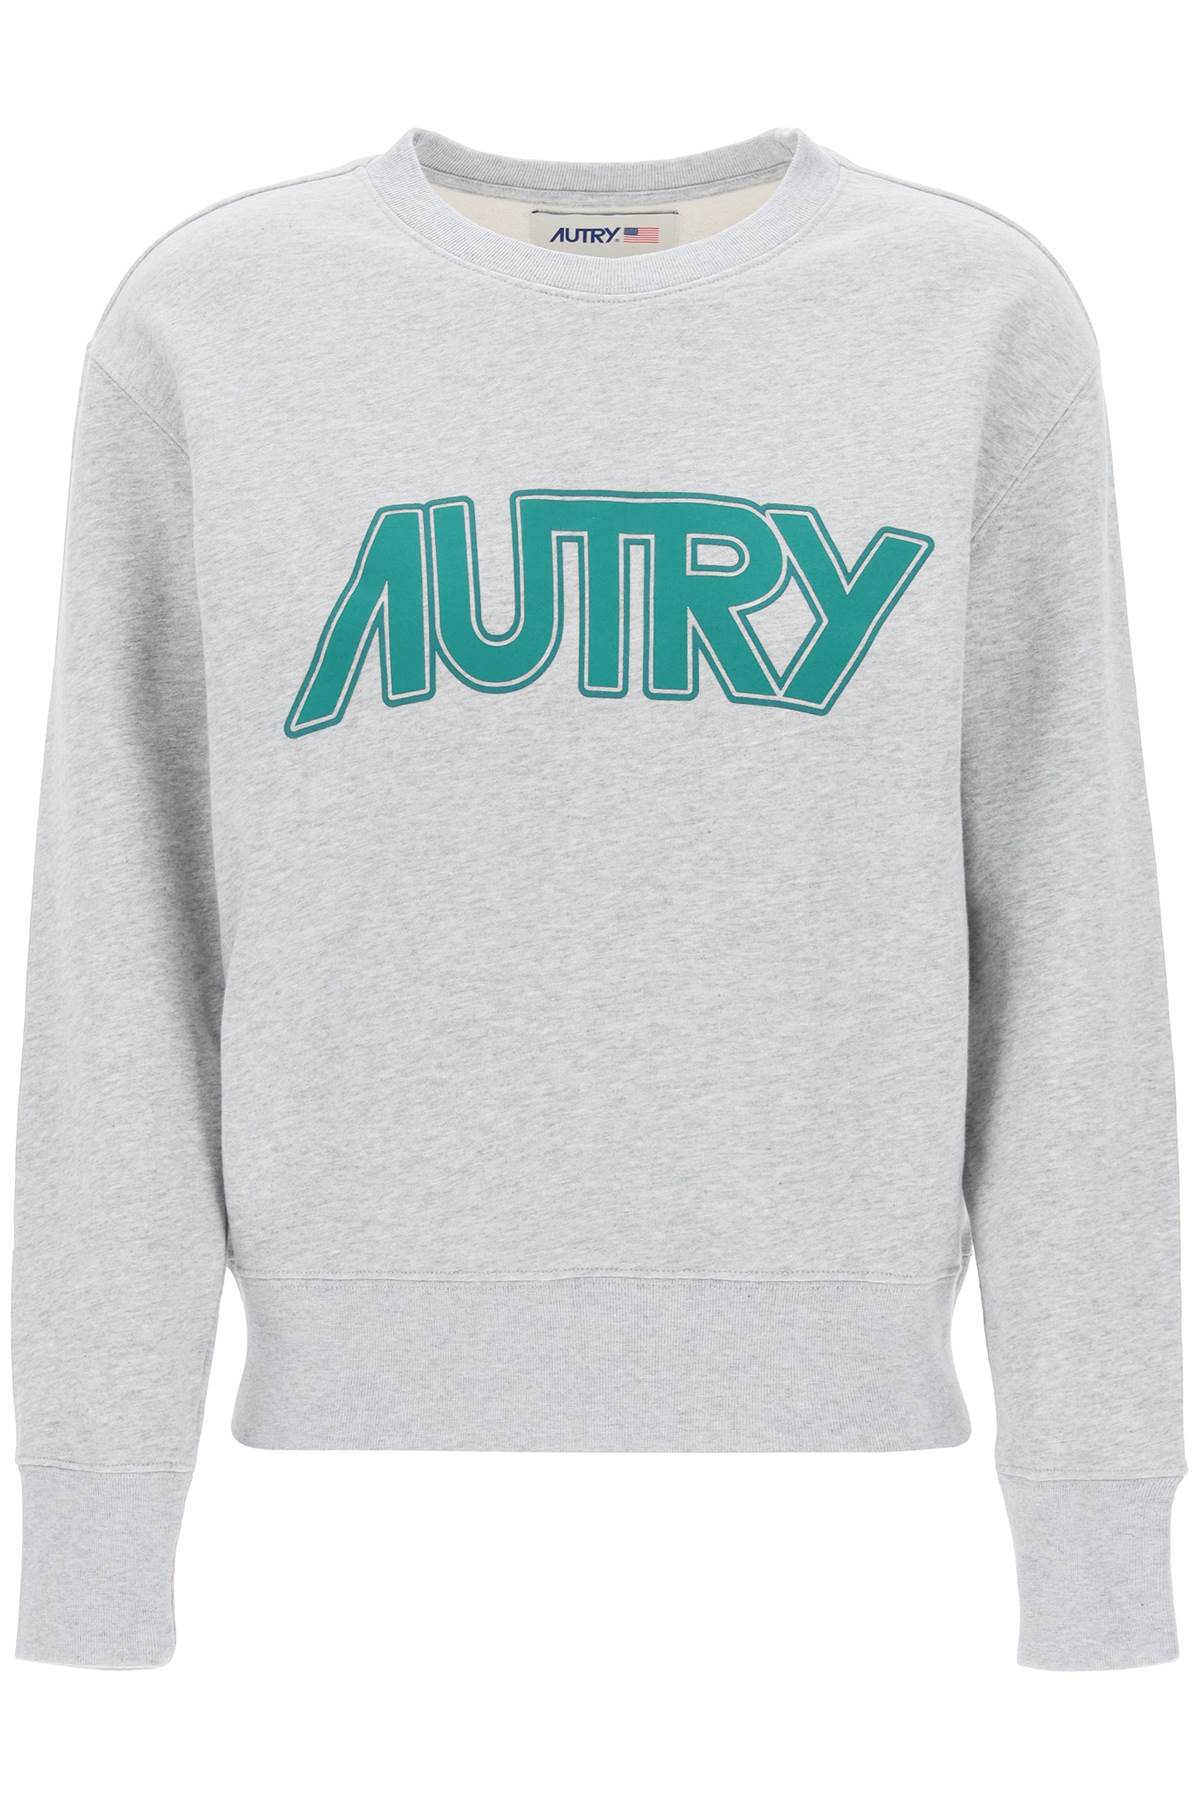 Autry sweatshirt with maxi logo print SWPW514M MELANGE